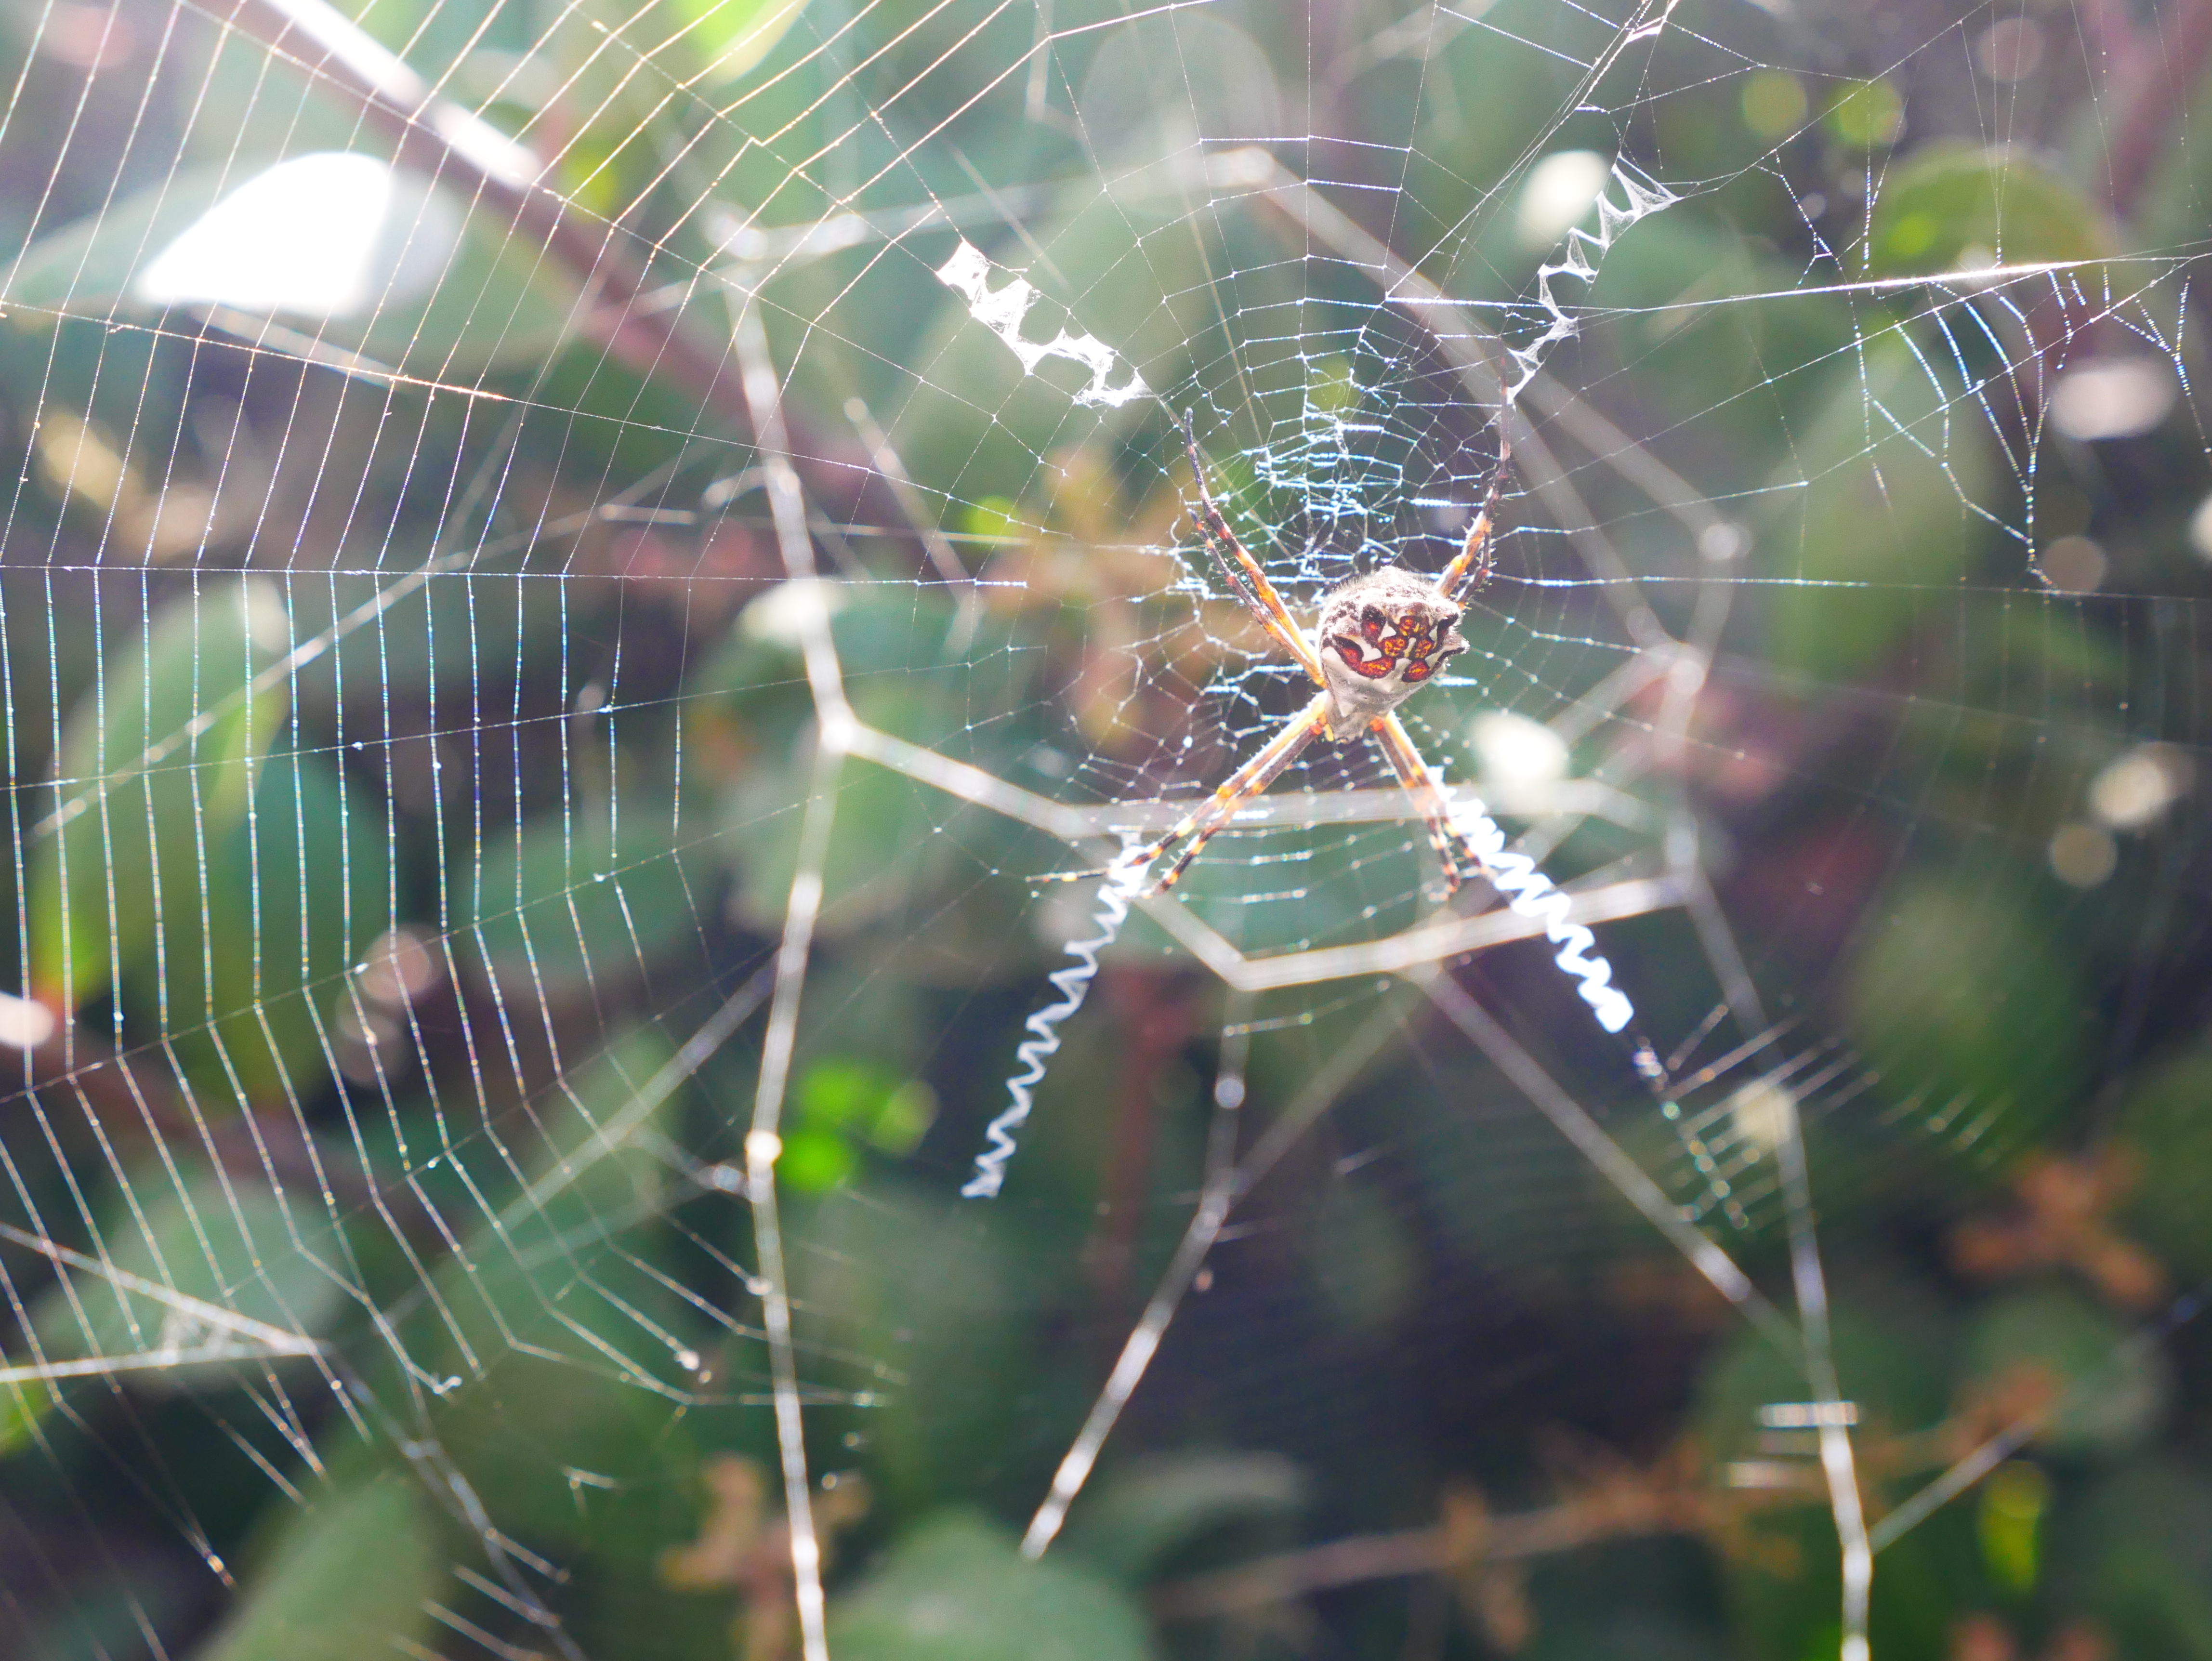 silver Argiope spider in web